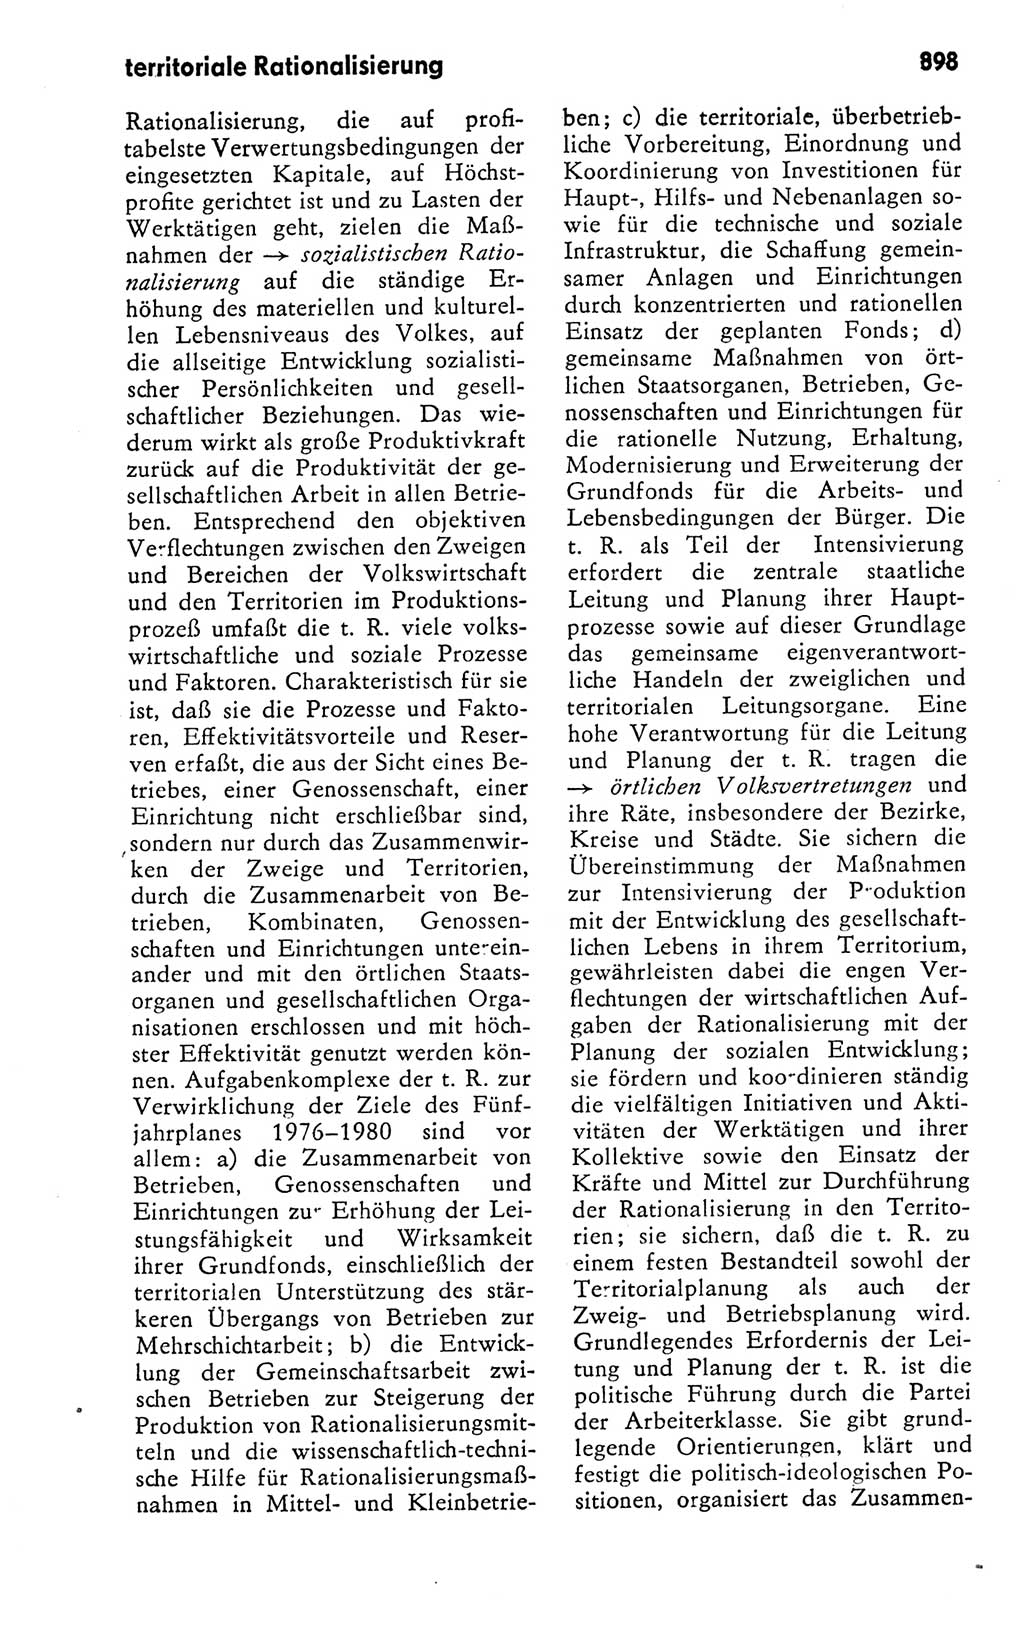 Kleines politisches Wörterbuch [Deutsche Demokratische Republik (DDR)] 1978, Seite 898 (Kl. pol. Wb. DDR 1978, S. 898)